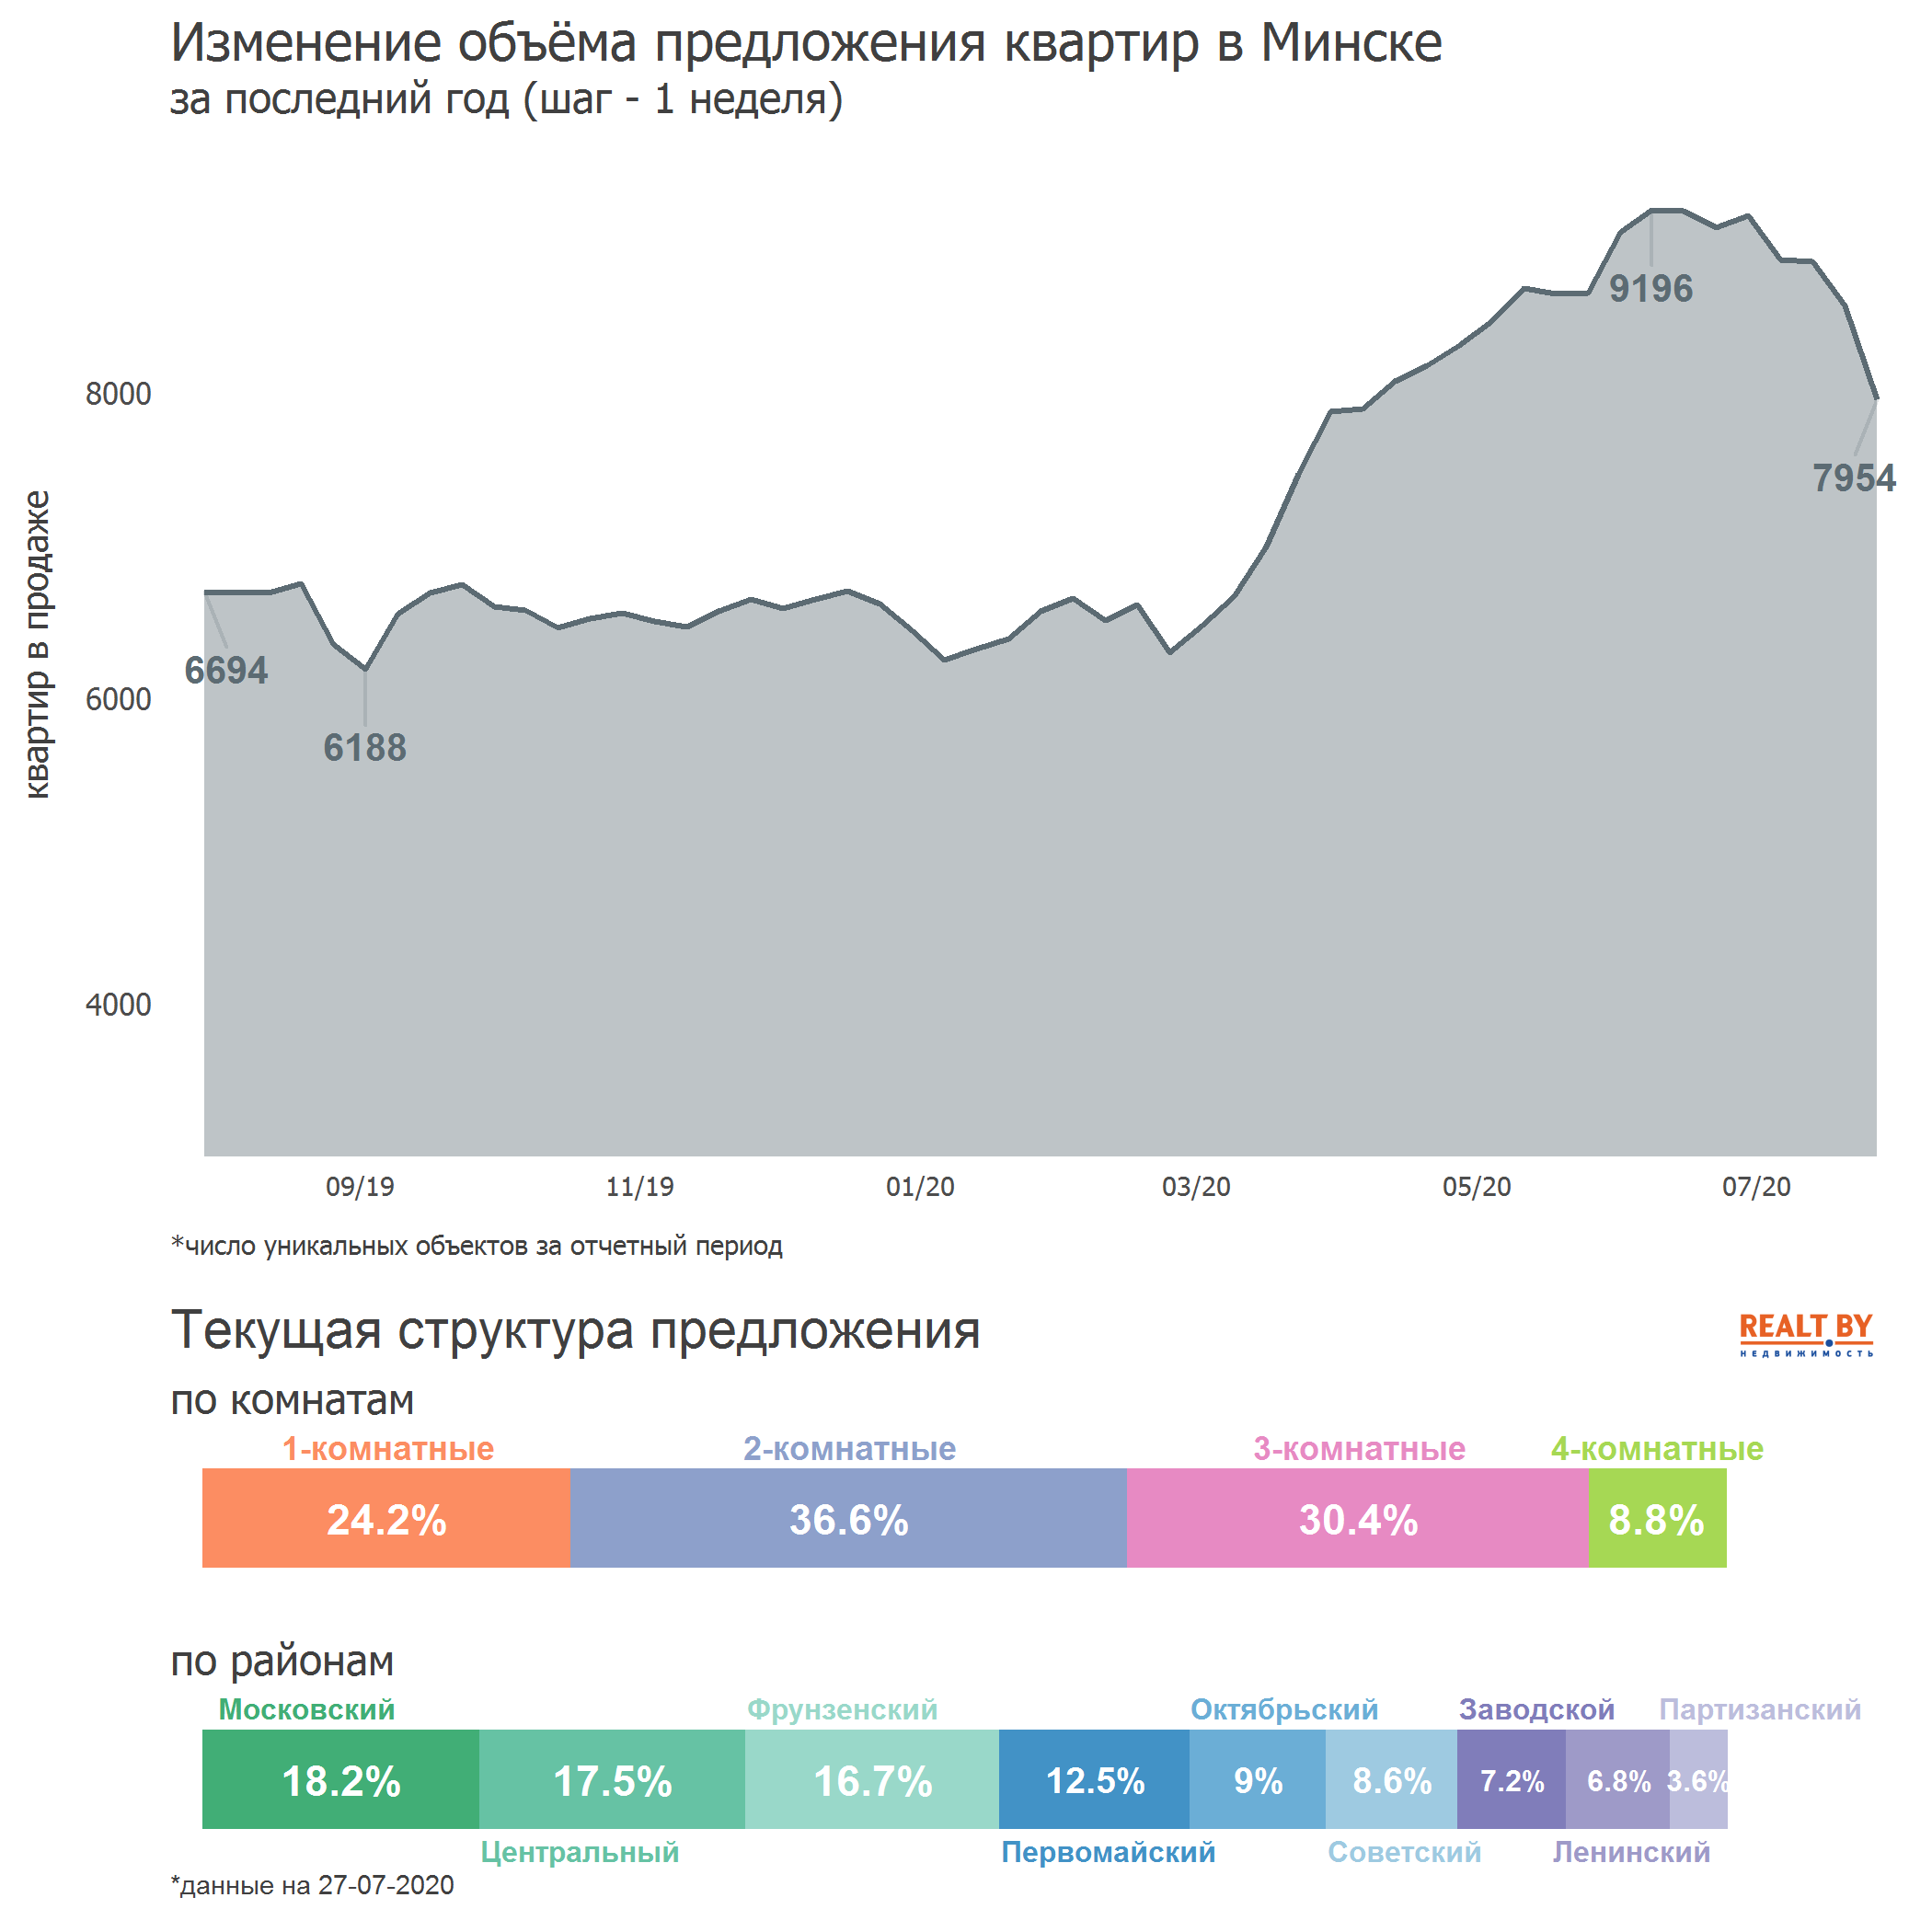 Мониторинг цен предложения квартир в Минске за 20-27 июля 2020 года